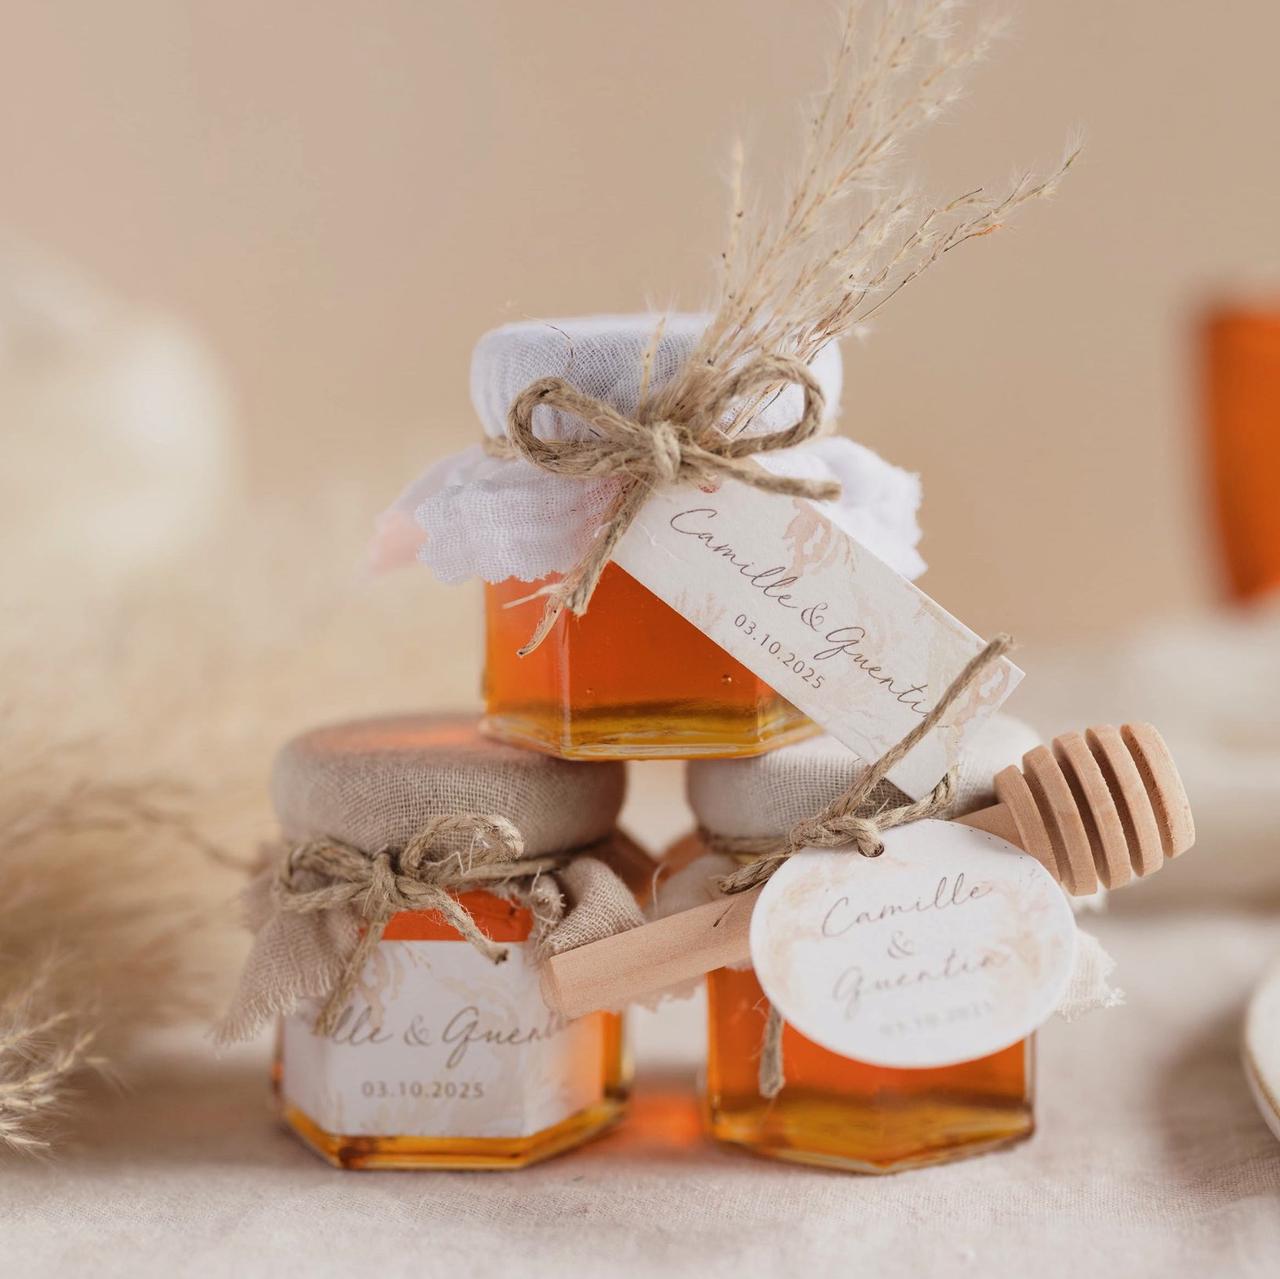 pack tarros de miel :: detalles & regalos :: Detalles invitados boda